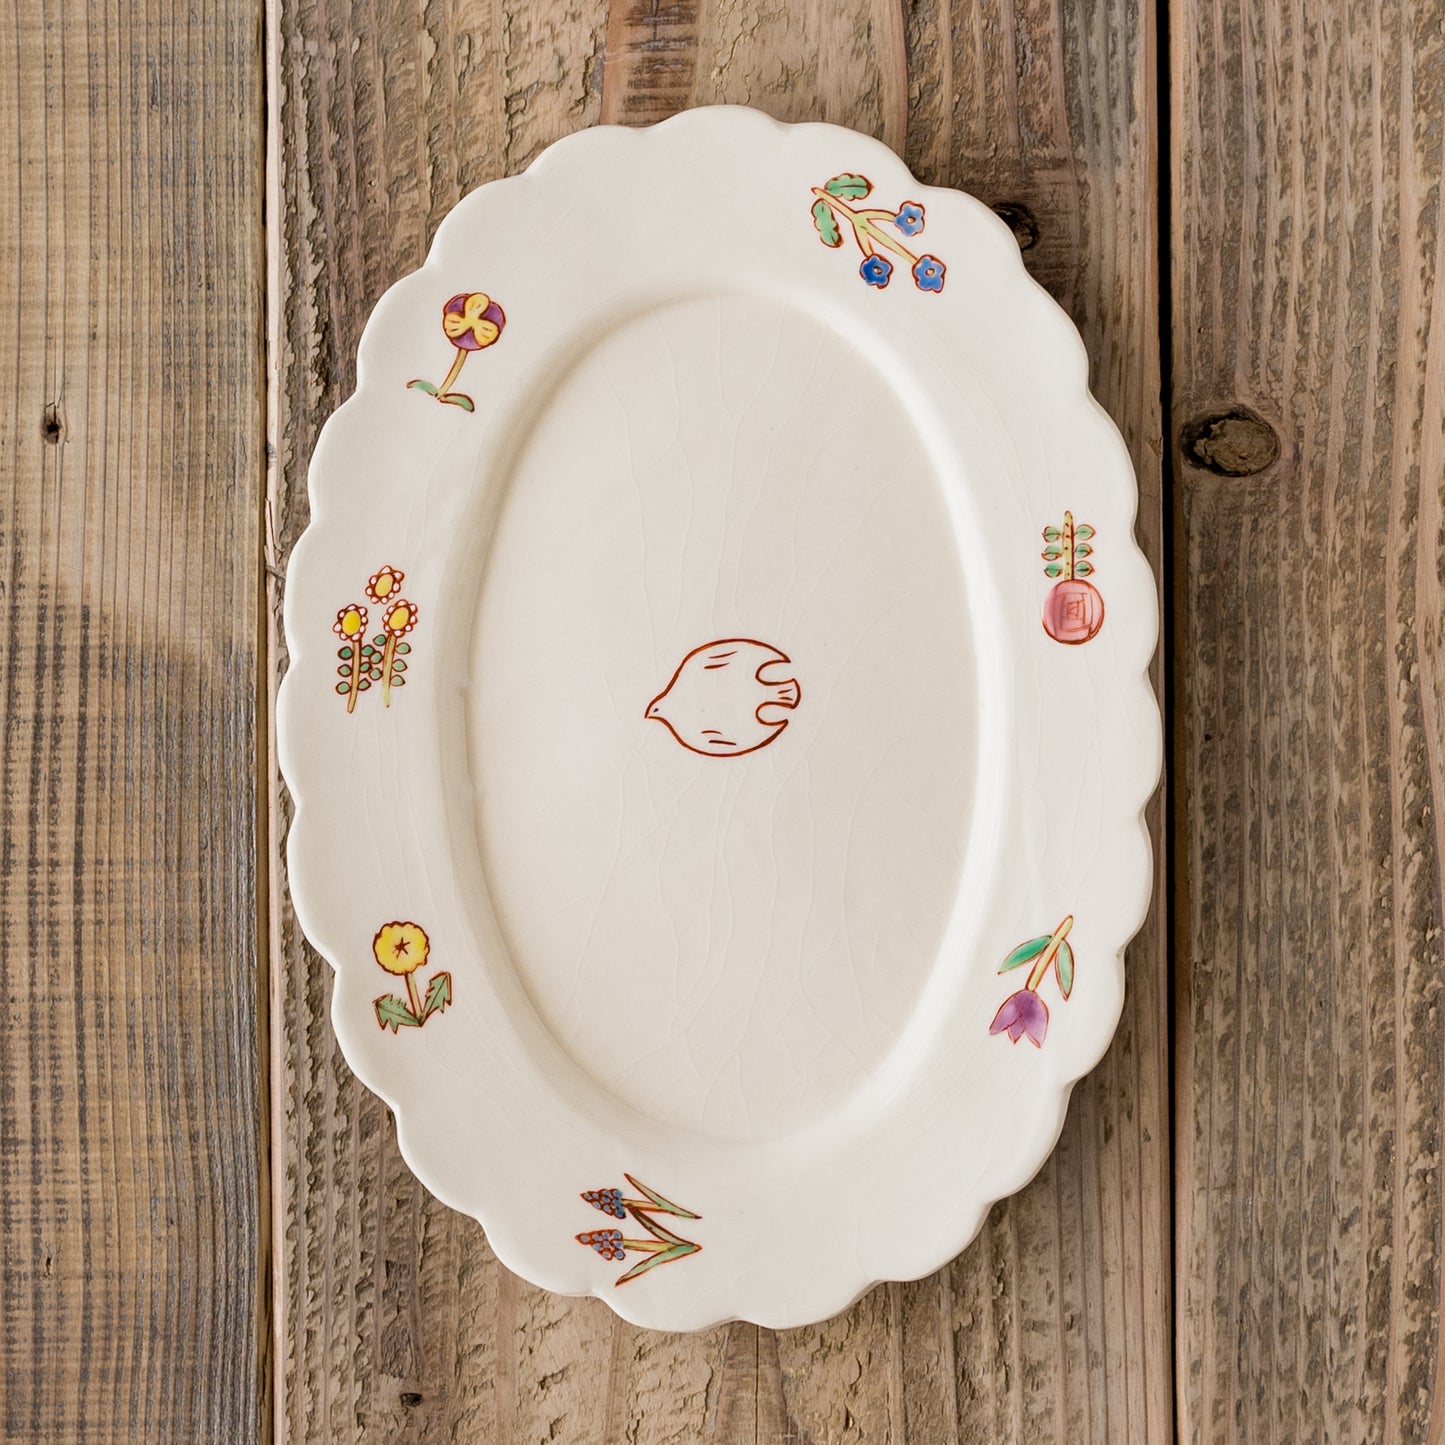 食卓を明るく可愛く彩ってくれる長浜由起子さんの小花絵付オーバル皿